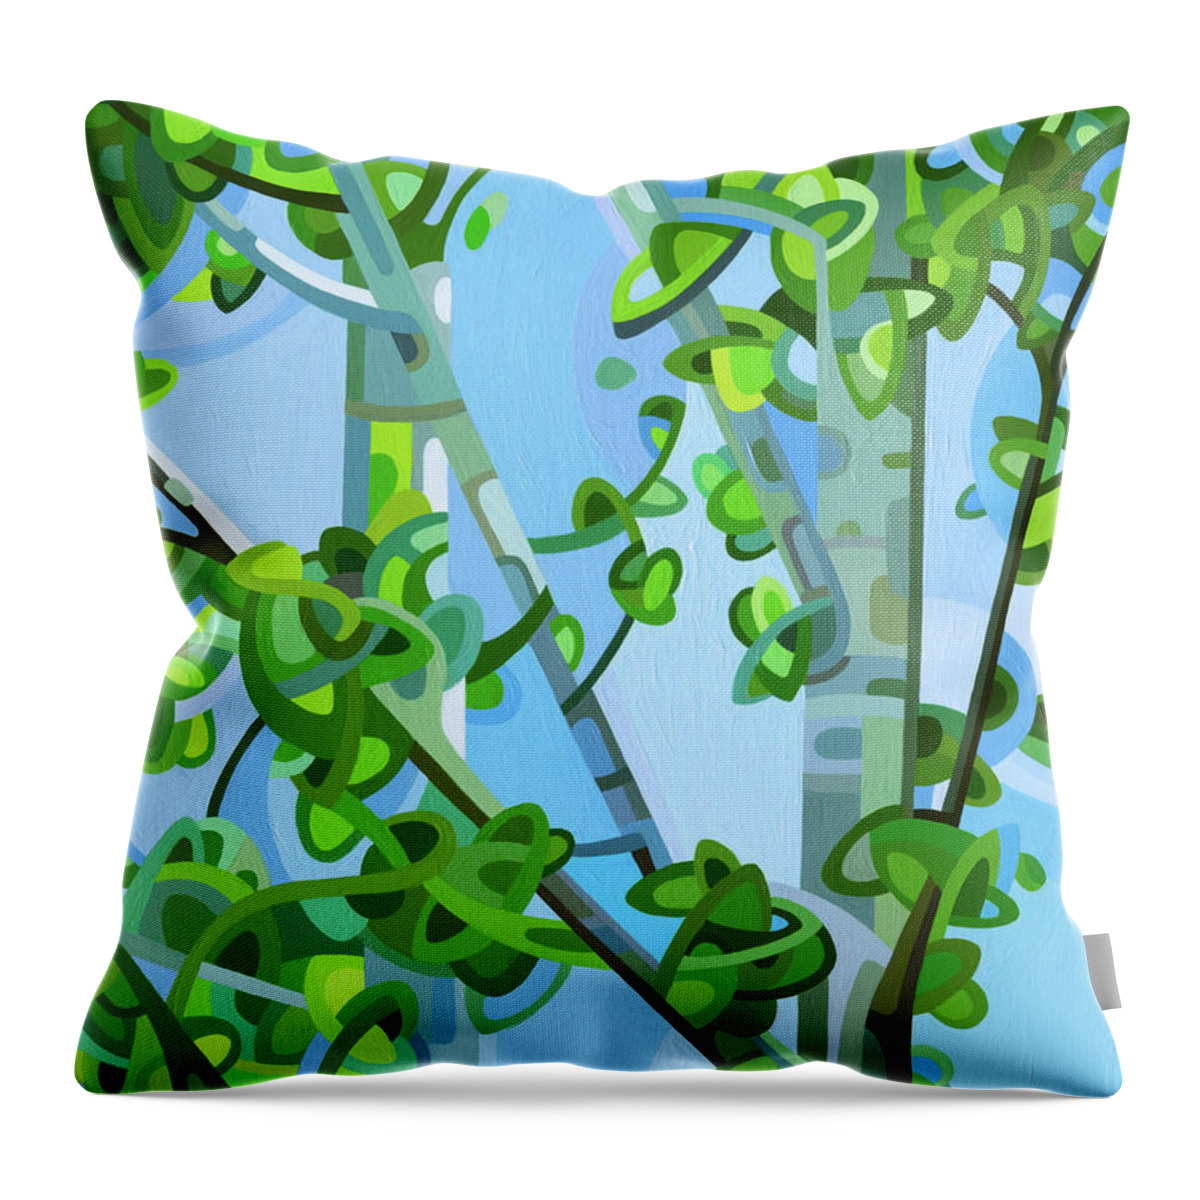 Summer Birch Forest Green Grey Blue Dappled Light Throw Pillow featuring the painting Birch Light by Mandy Budan